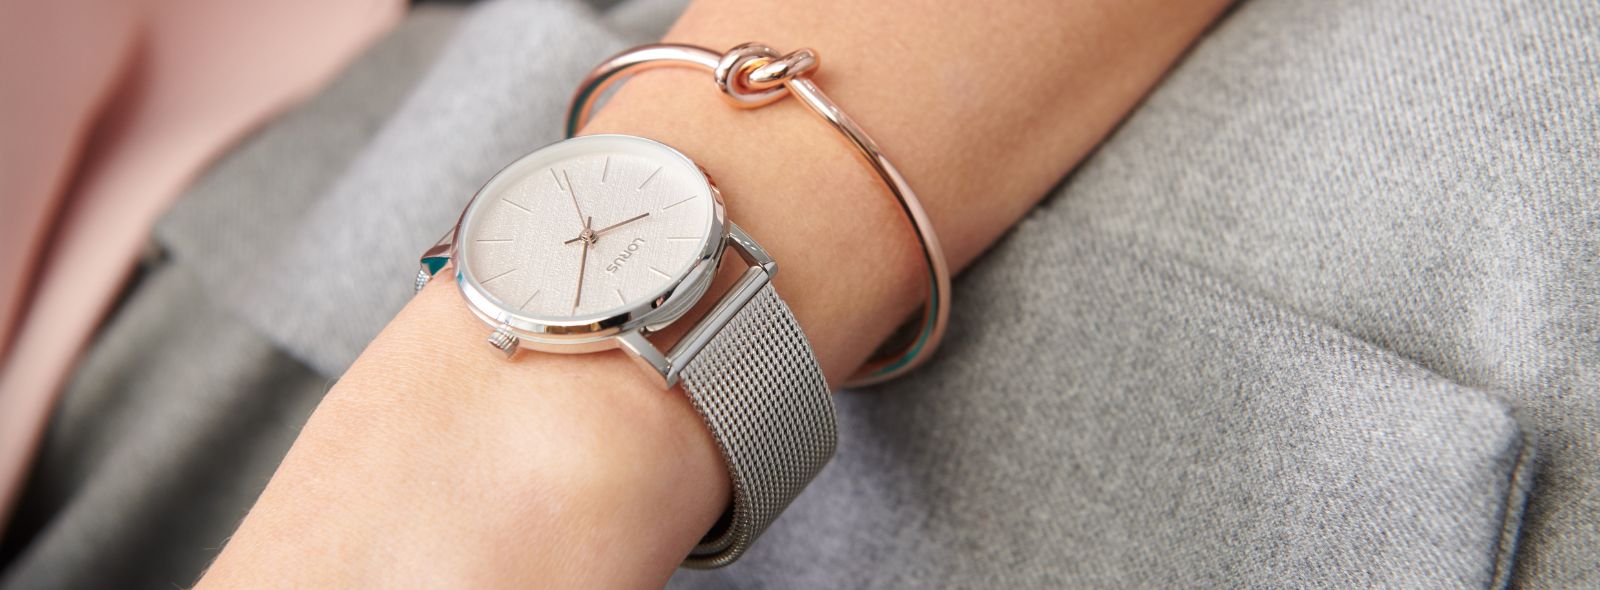 Czy zegarek to biżuteria? | Zegarownia.pl Blog